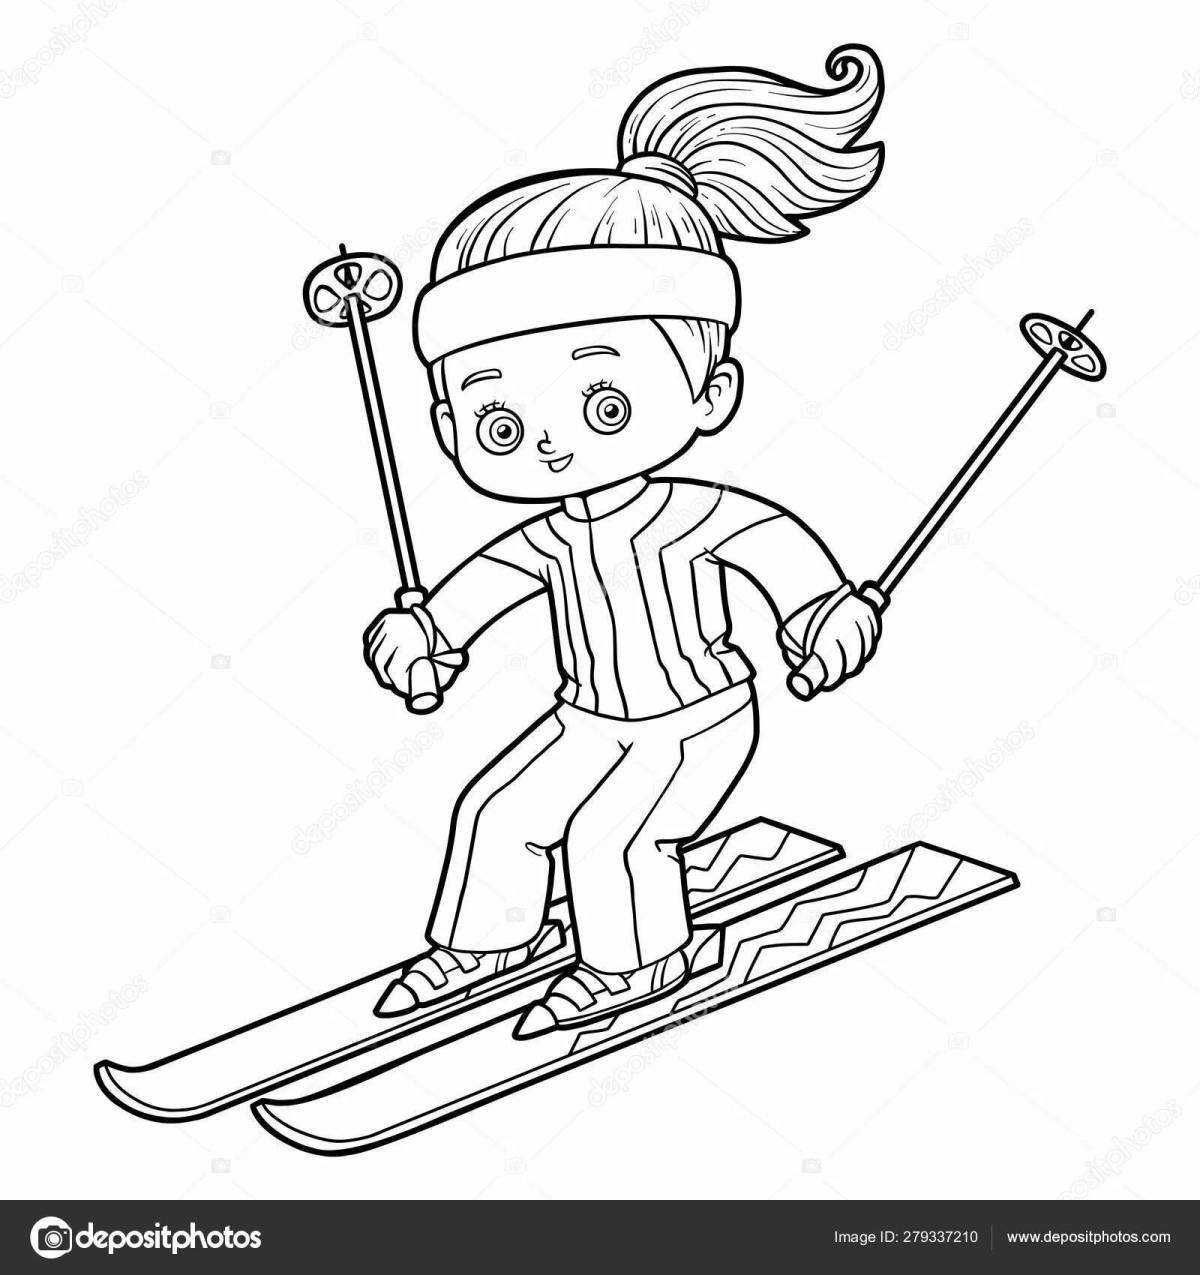 Анимационные лыжи для детей 3-4 лет